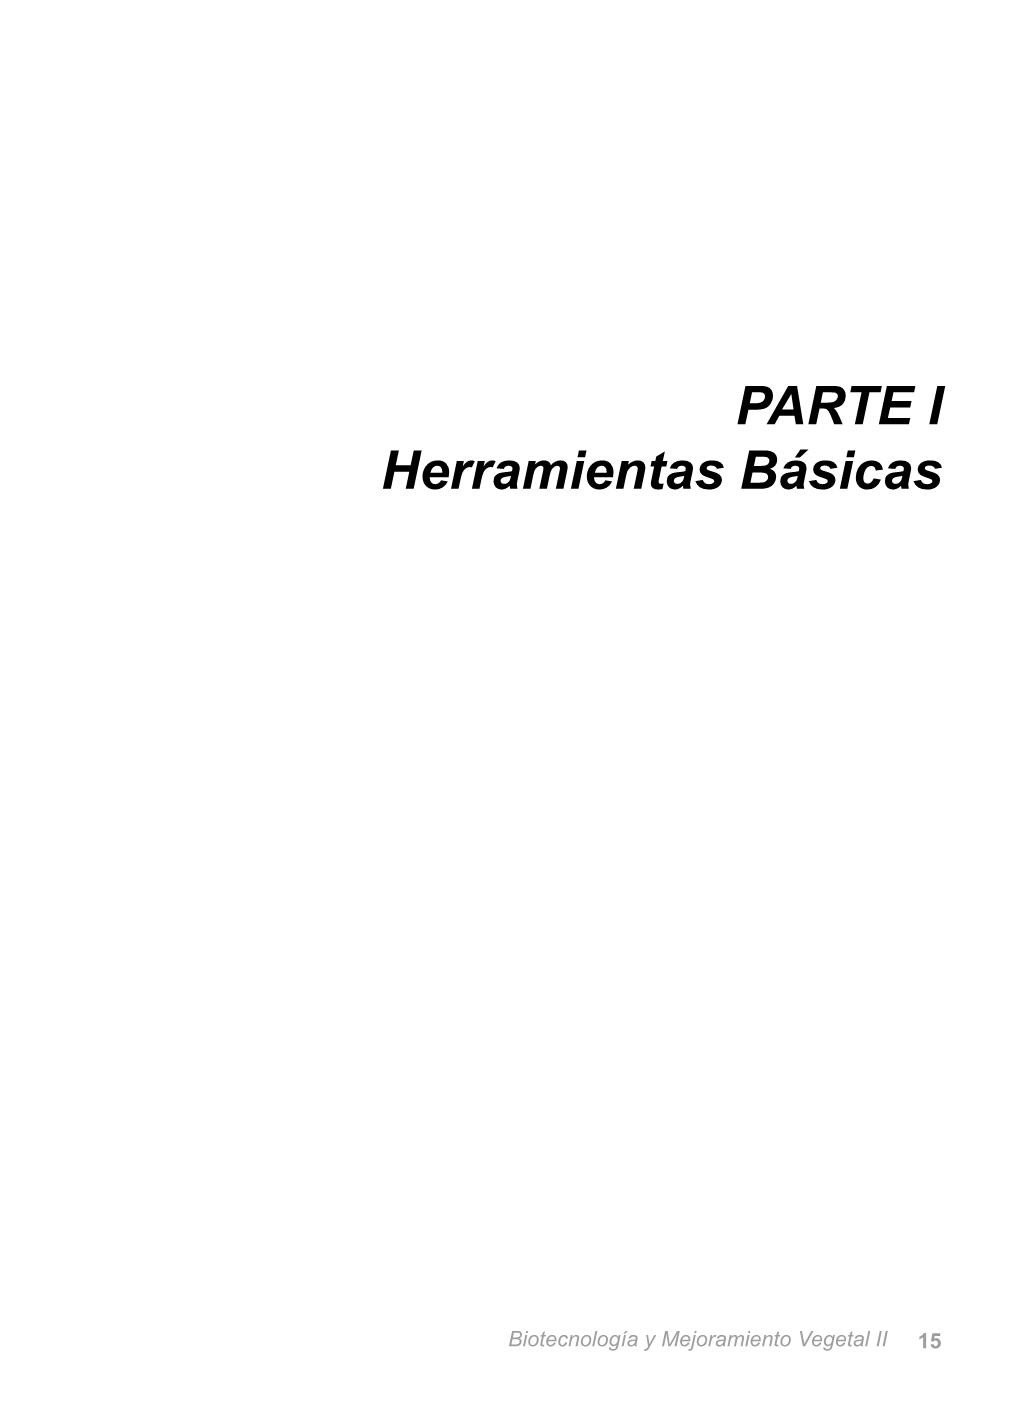 PARTE I Herramientas Básicas